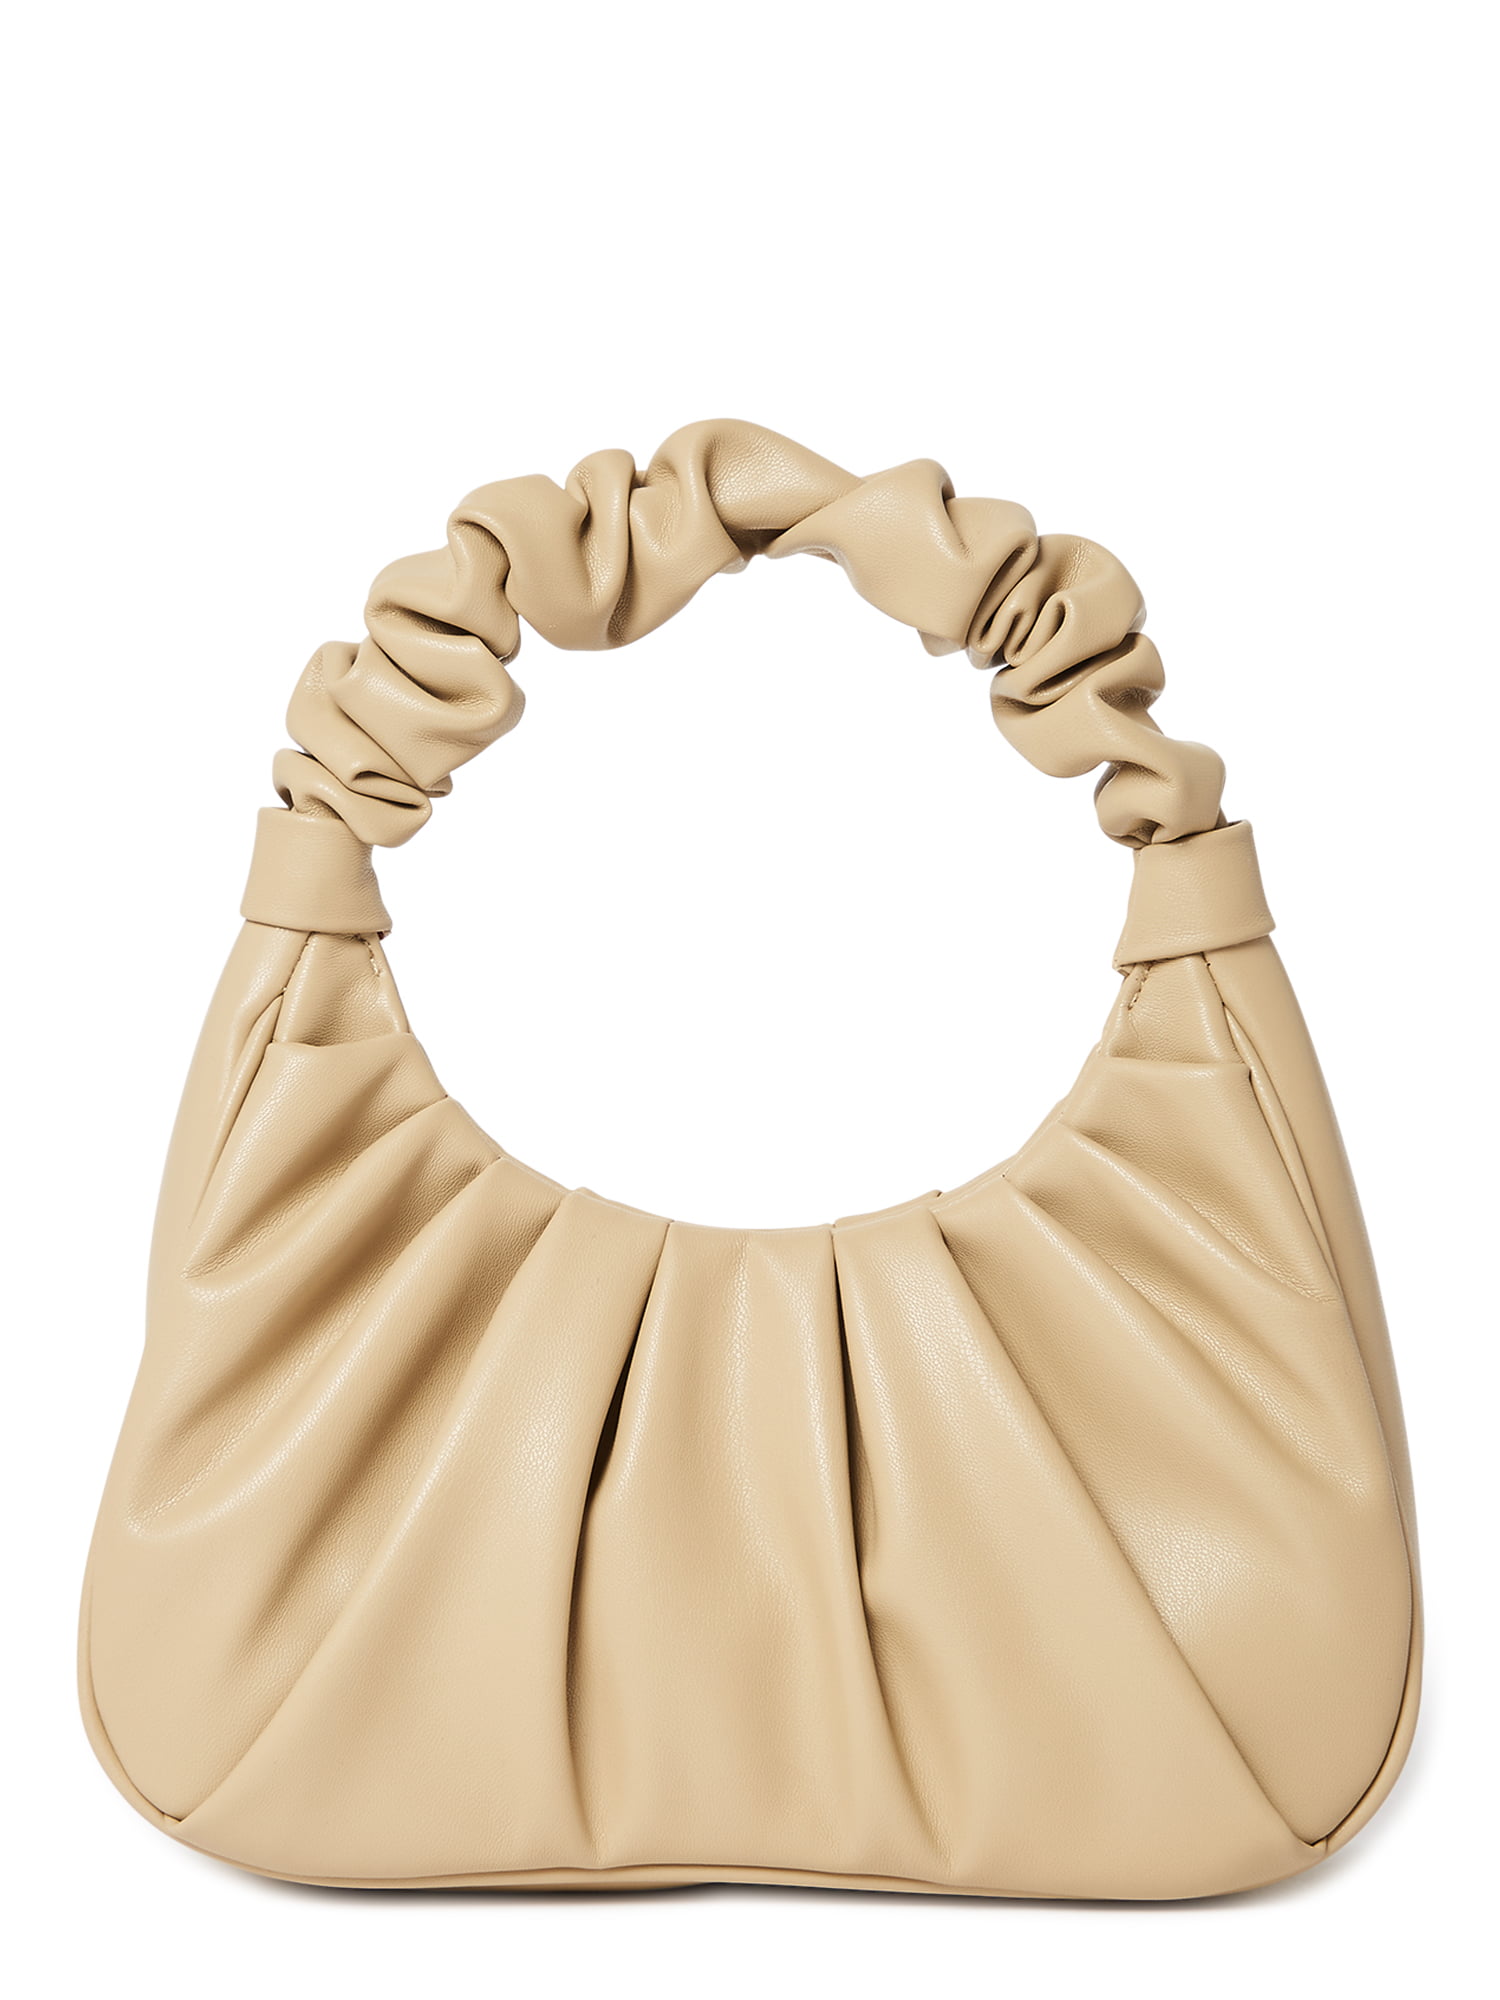 Buy RAAHA Khaki Color Linen 10L Messenger Bag For Men & Women BG40 at  Amazon.in